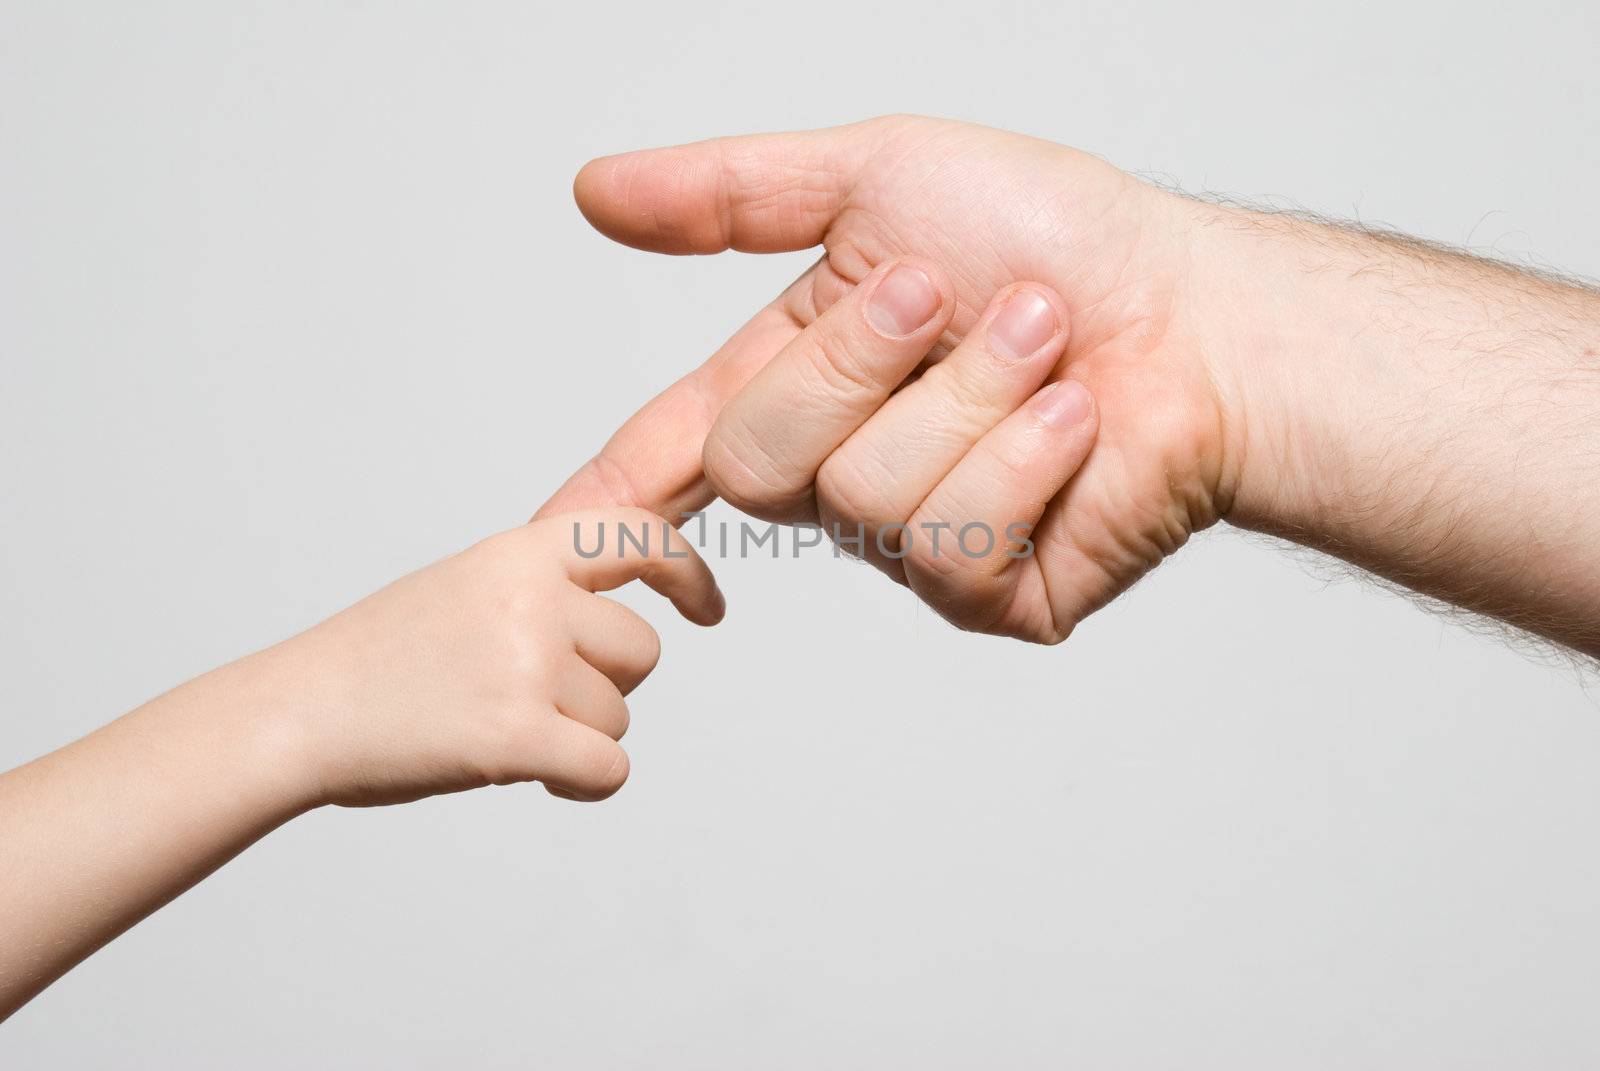 Children's hand in a man's hand